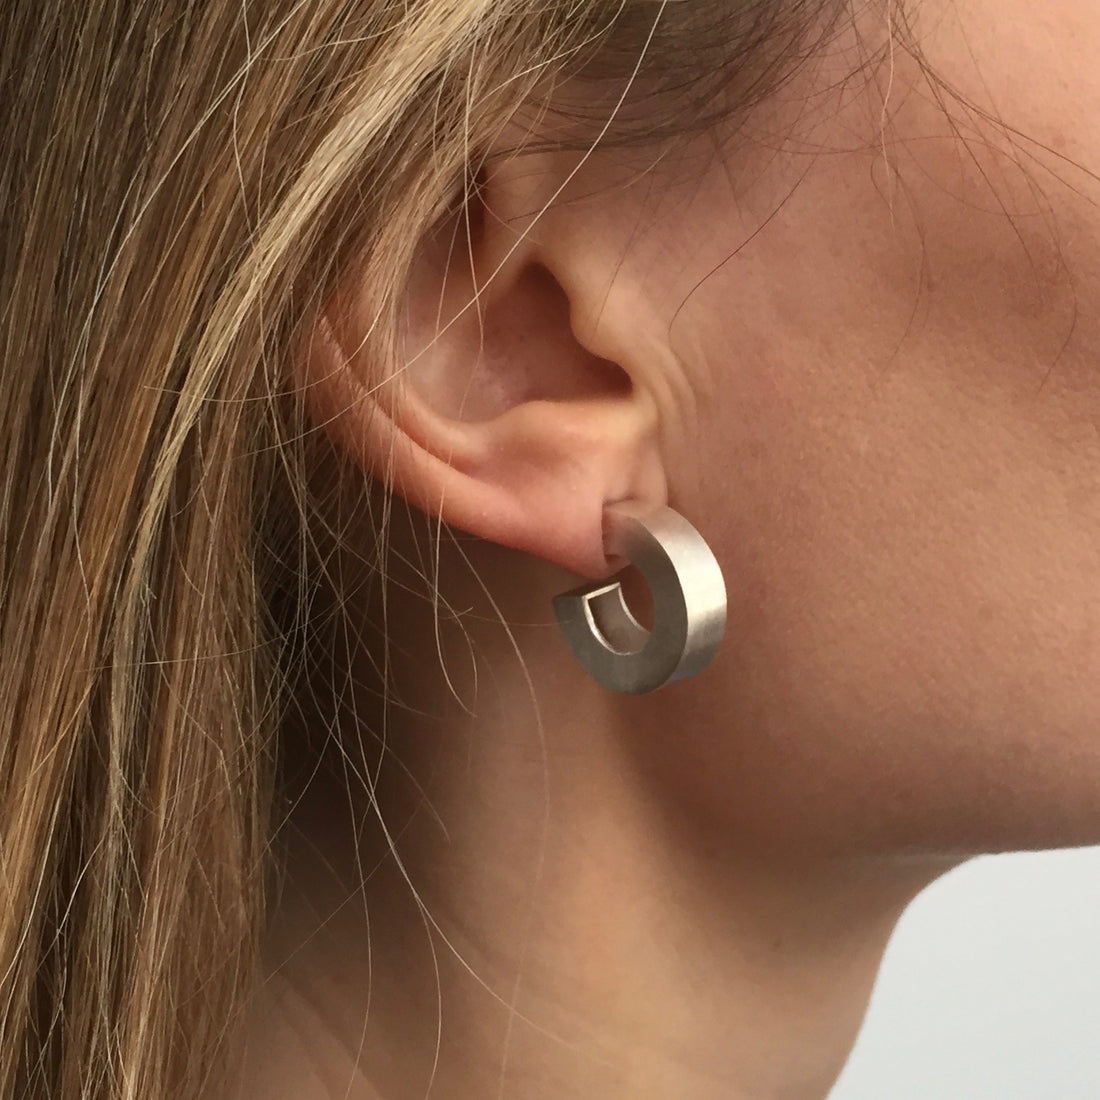 Chunky silver hoop earrings being worn by model.